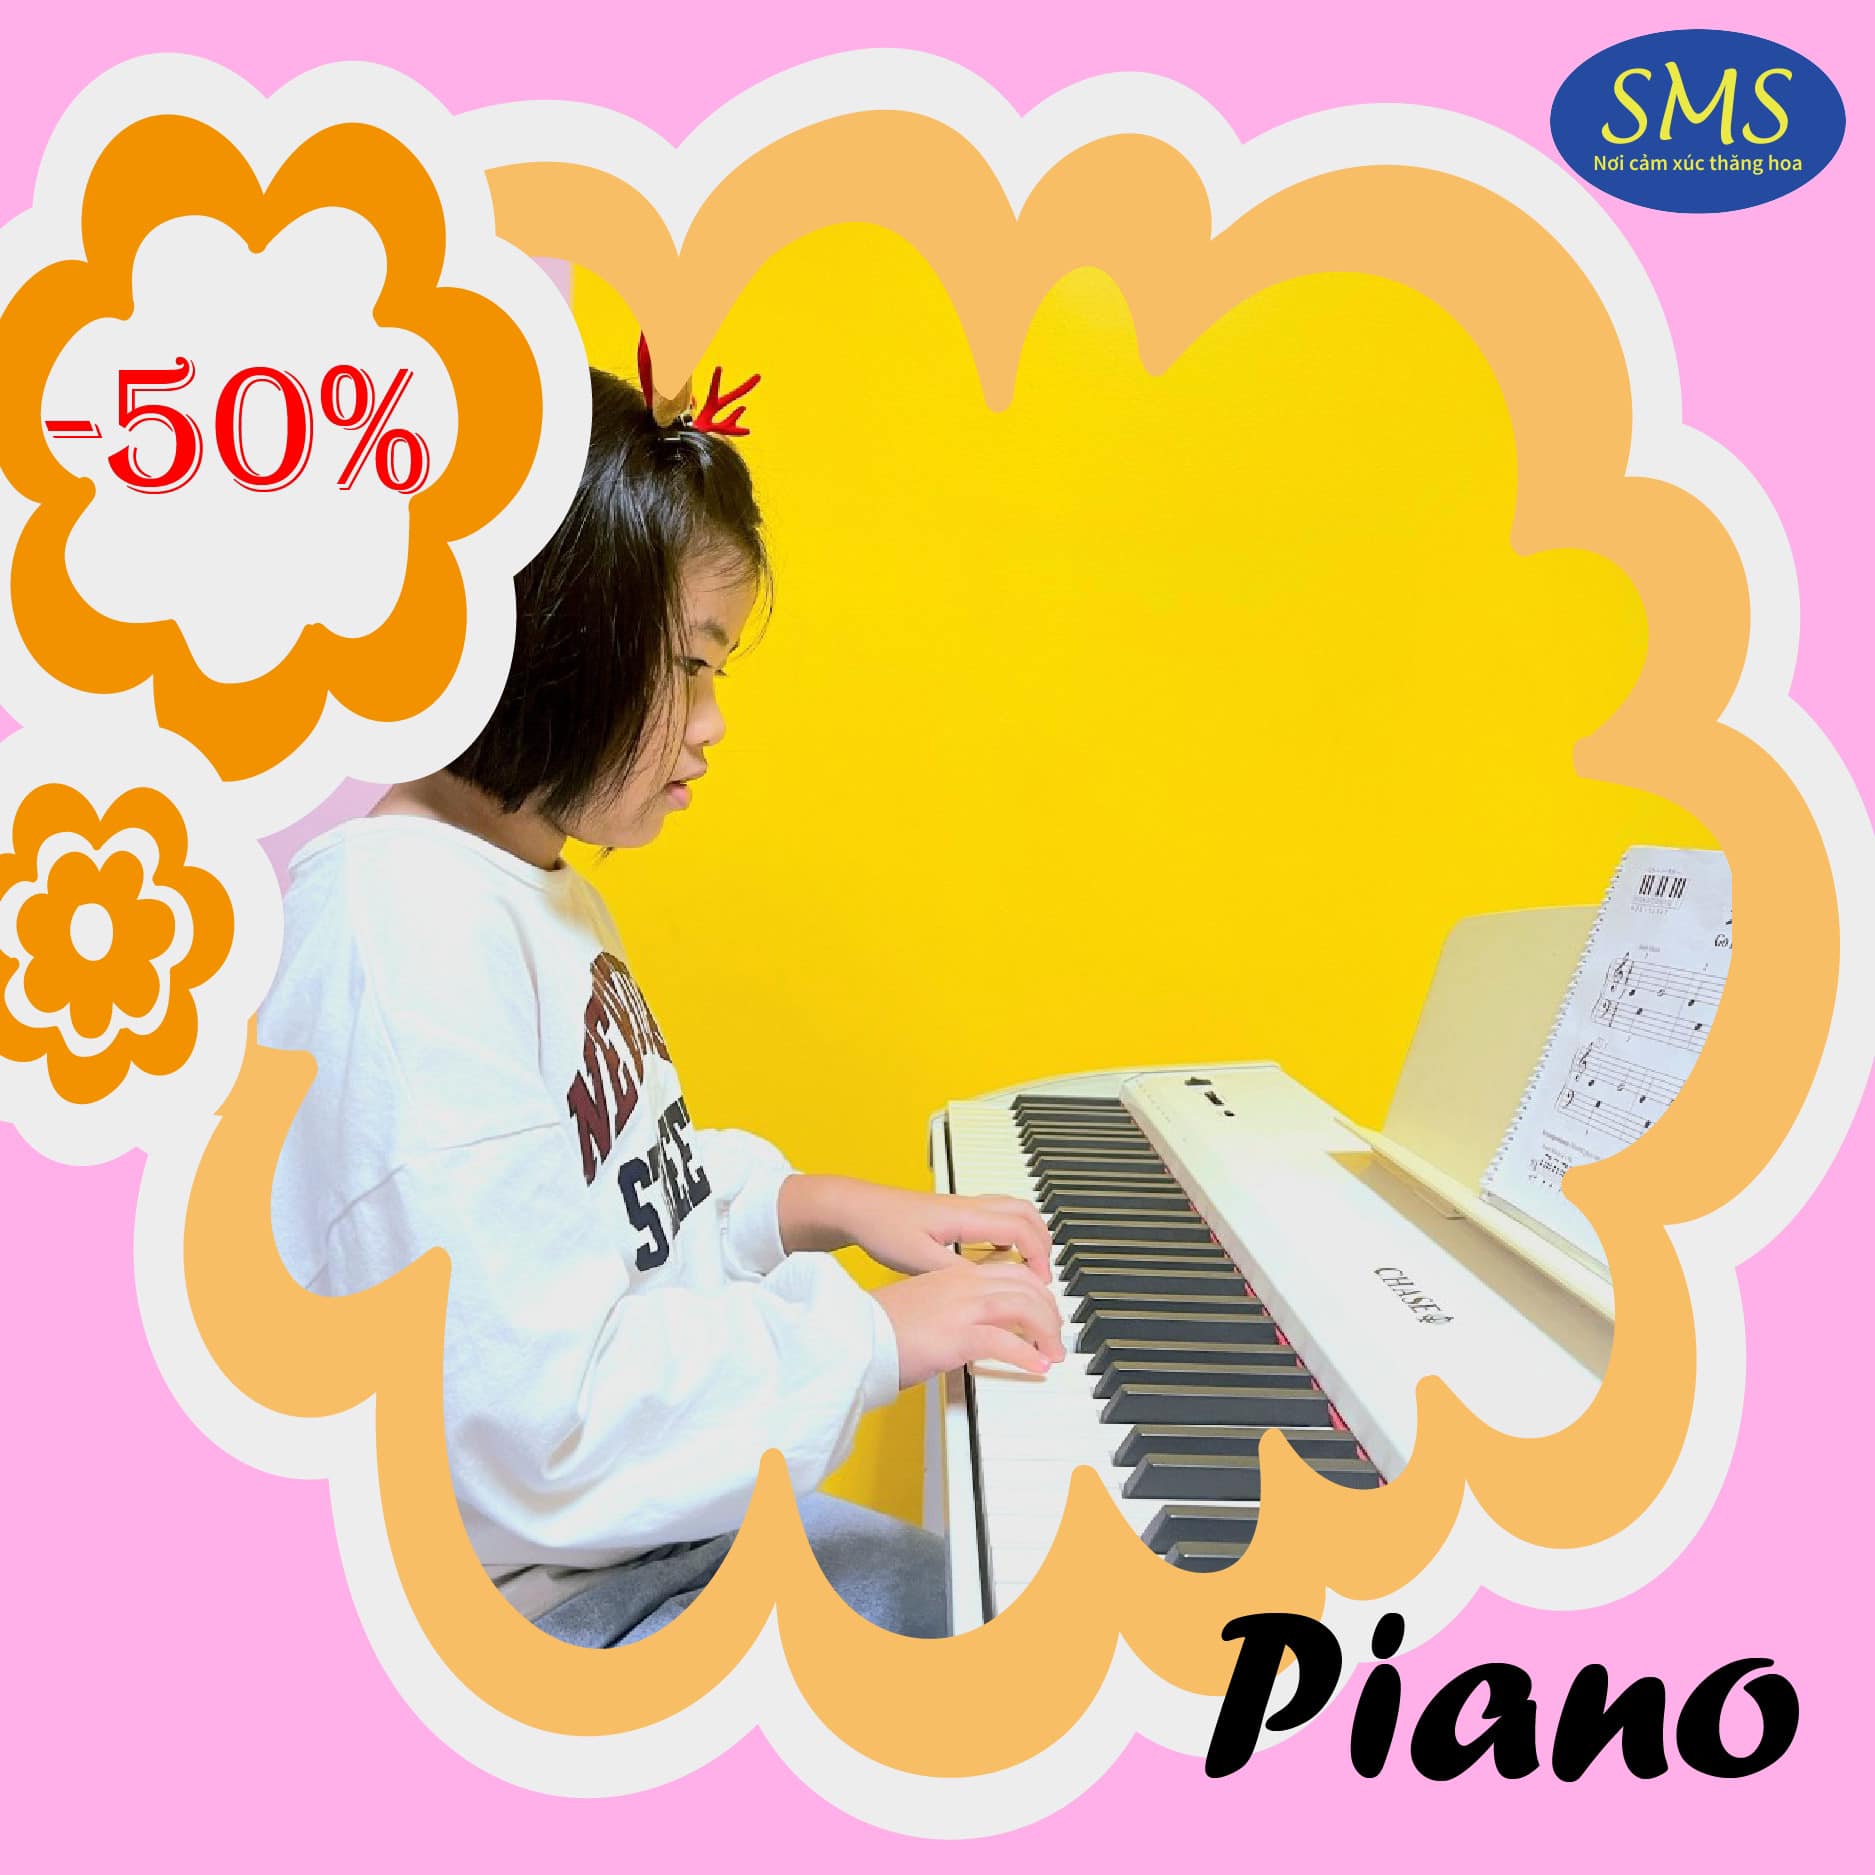 Học Piano giảm 50% học phí